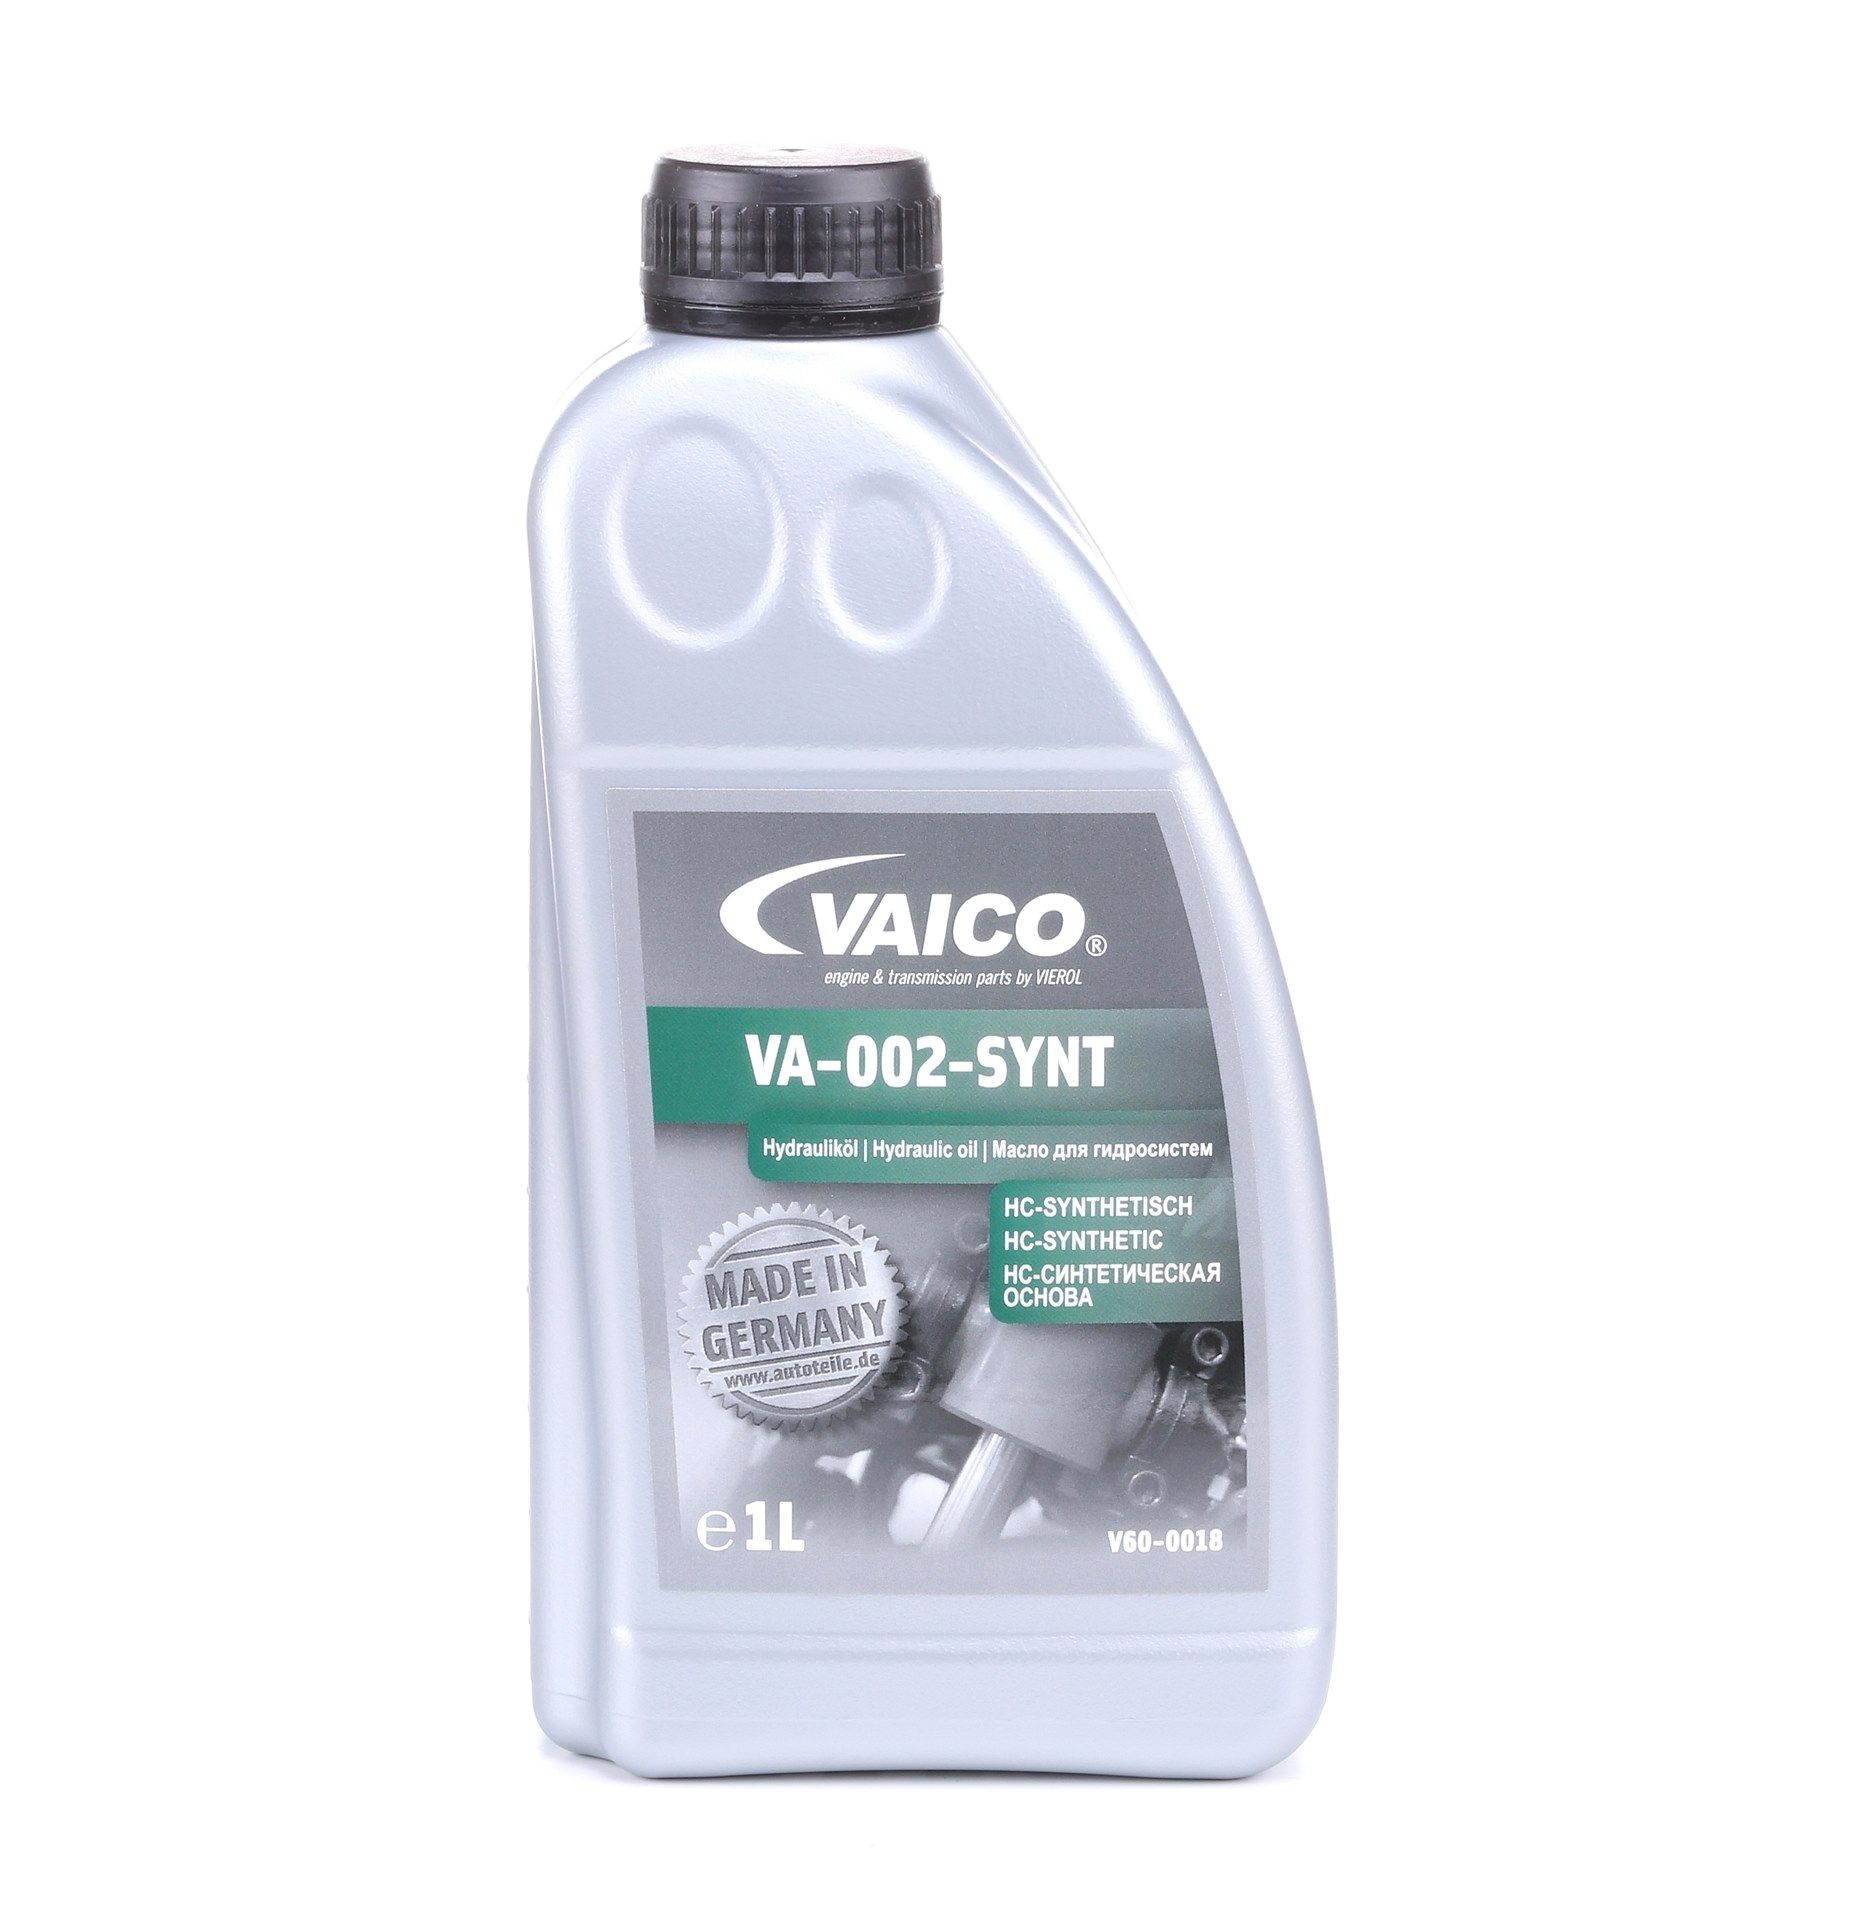 VAICO V60-0018 Centrālā hidrauliskā eļļa Q+, original equipment manufacturer quality MADE IN GERMANY